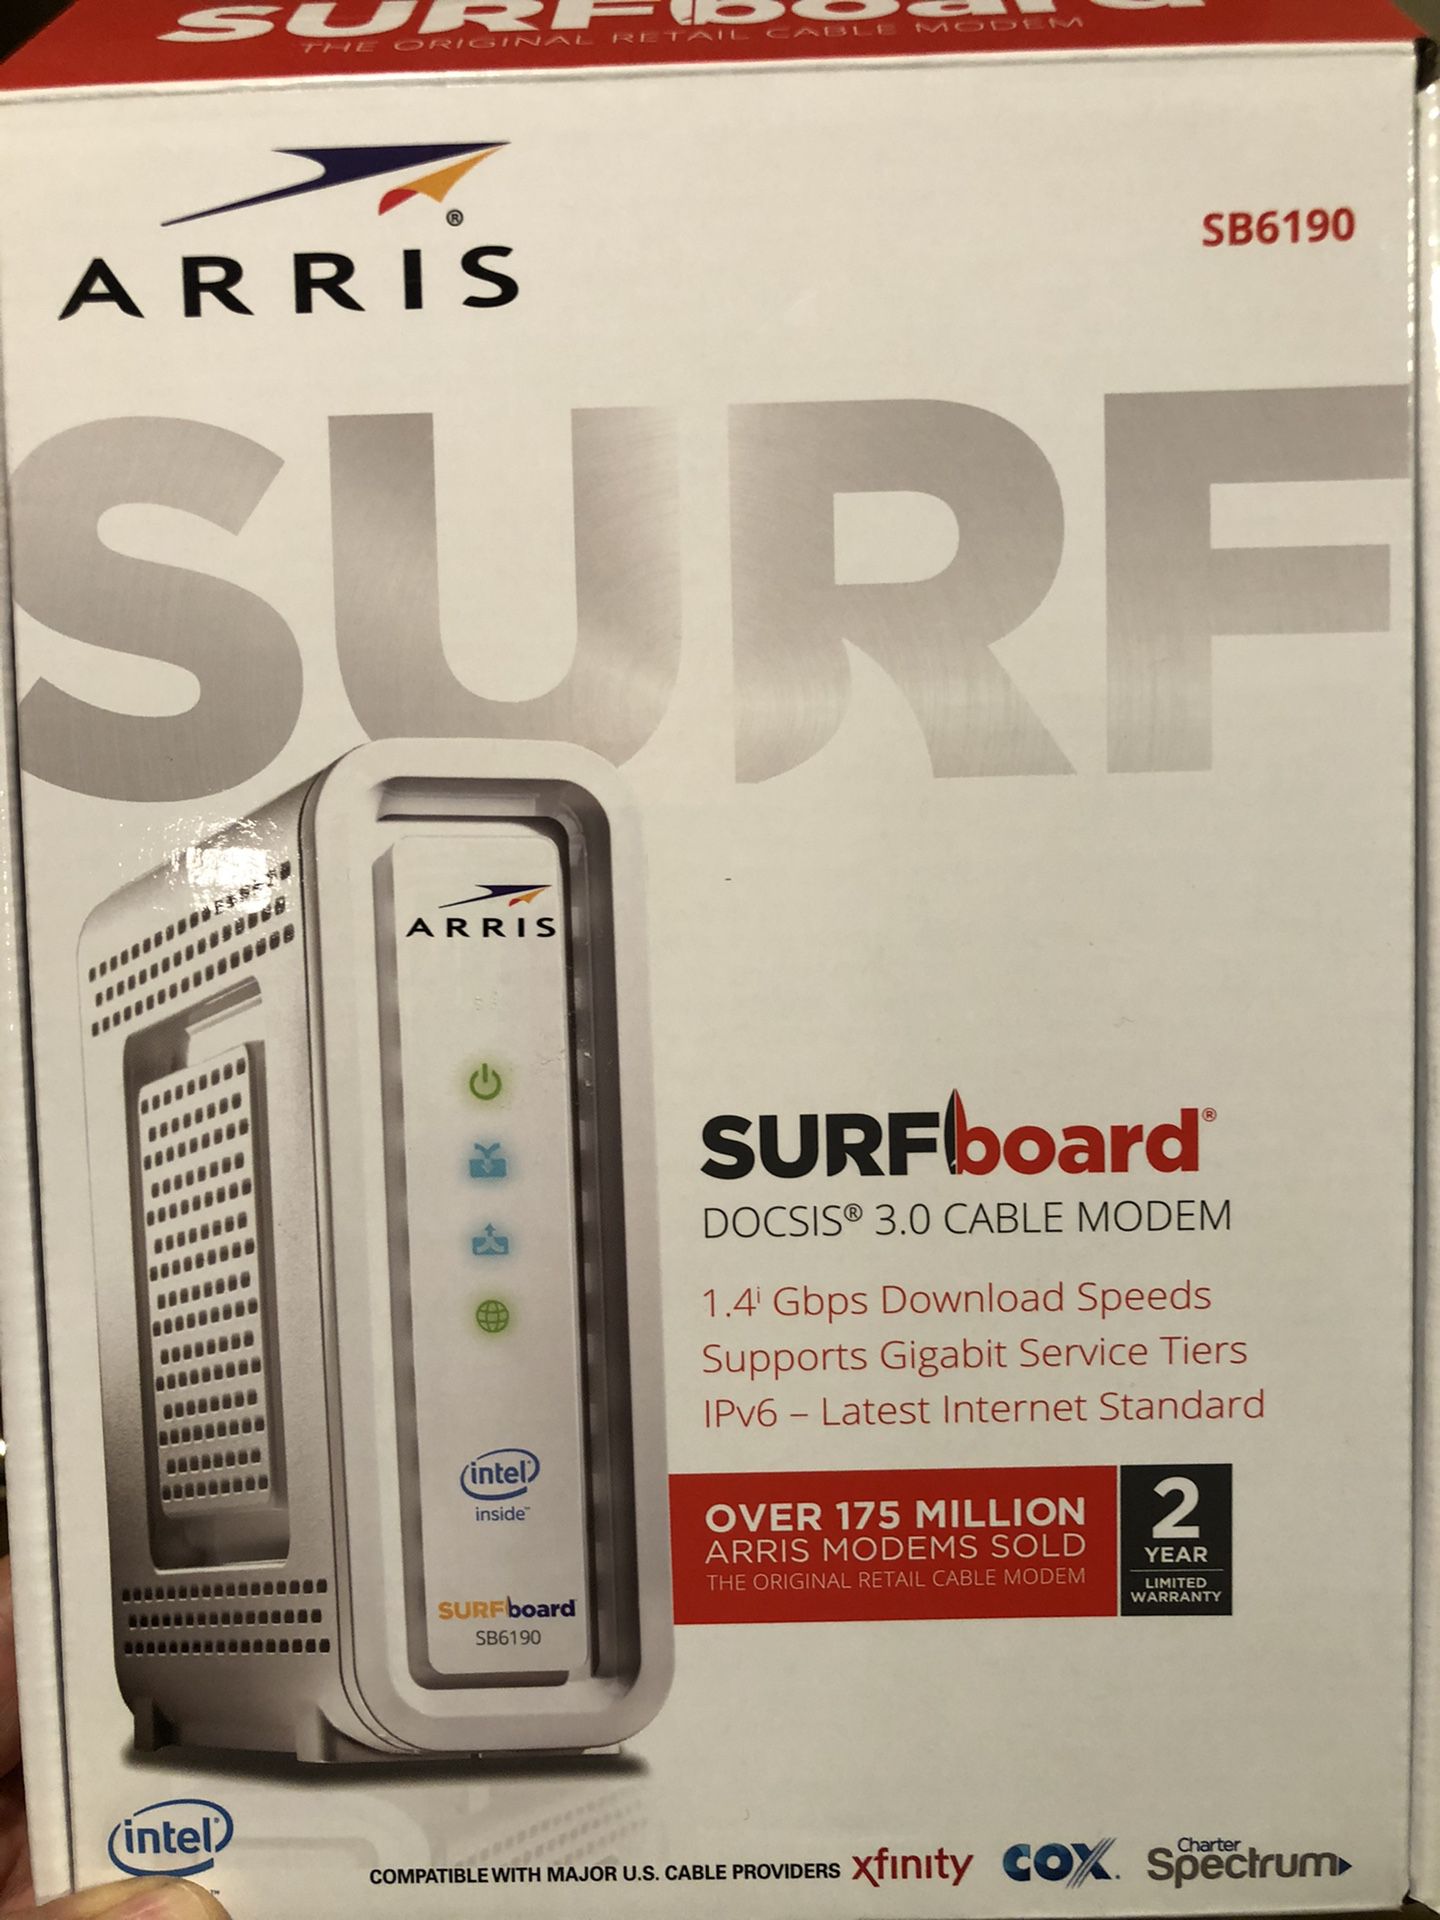 Arris Surfboard Docsis 3.0 cable modem